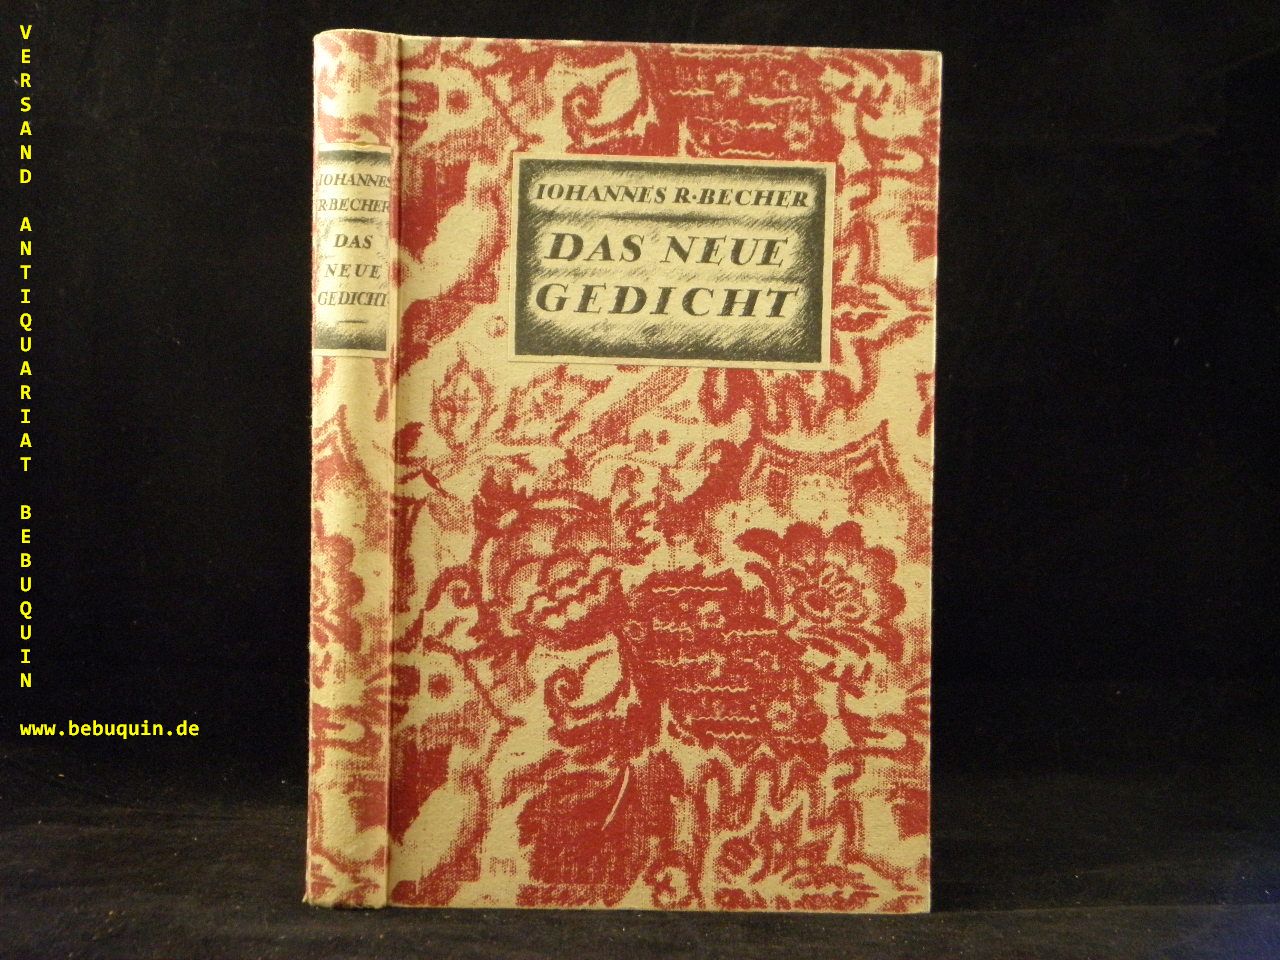 BECHER, Johannes R.: - Das neue Gedicht.  Auswahl. (1912 - 1918).